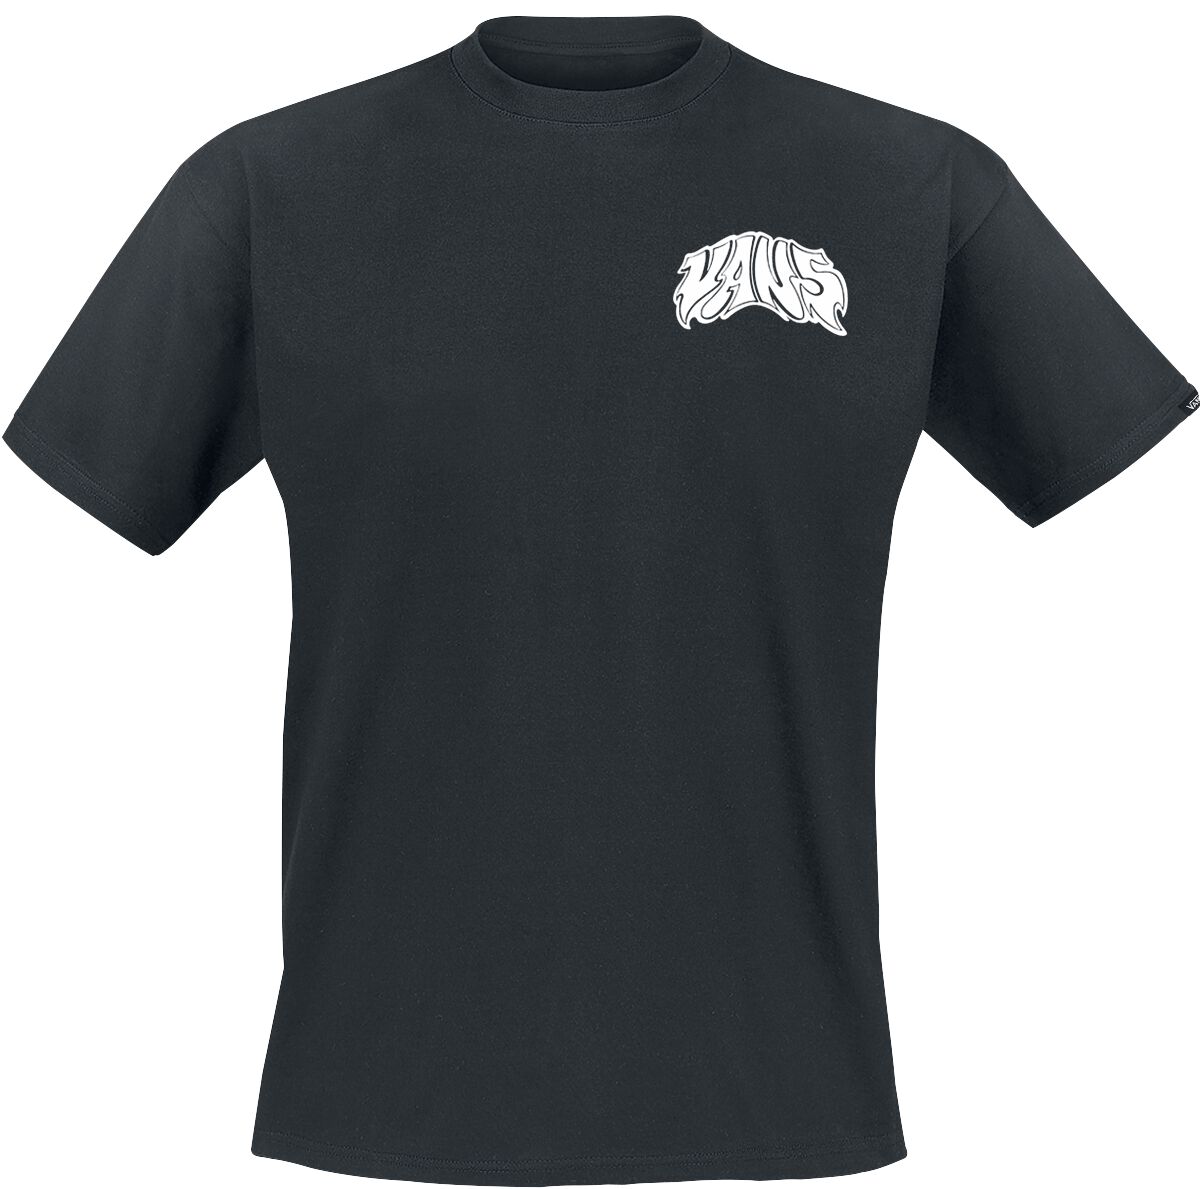 Vans T-Shirt - Prowler Tee - S bis XXL - für Männer - Größe M - schwarz